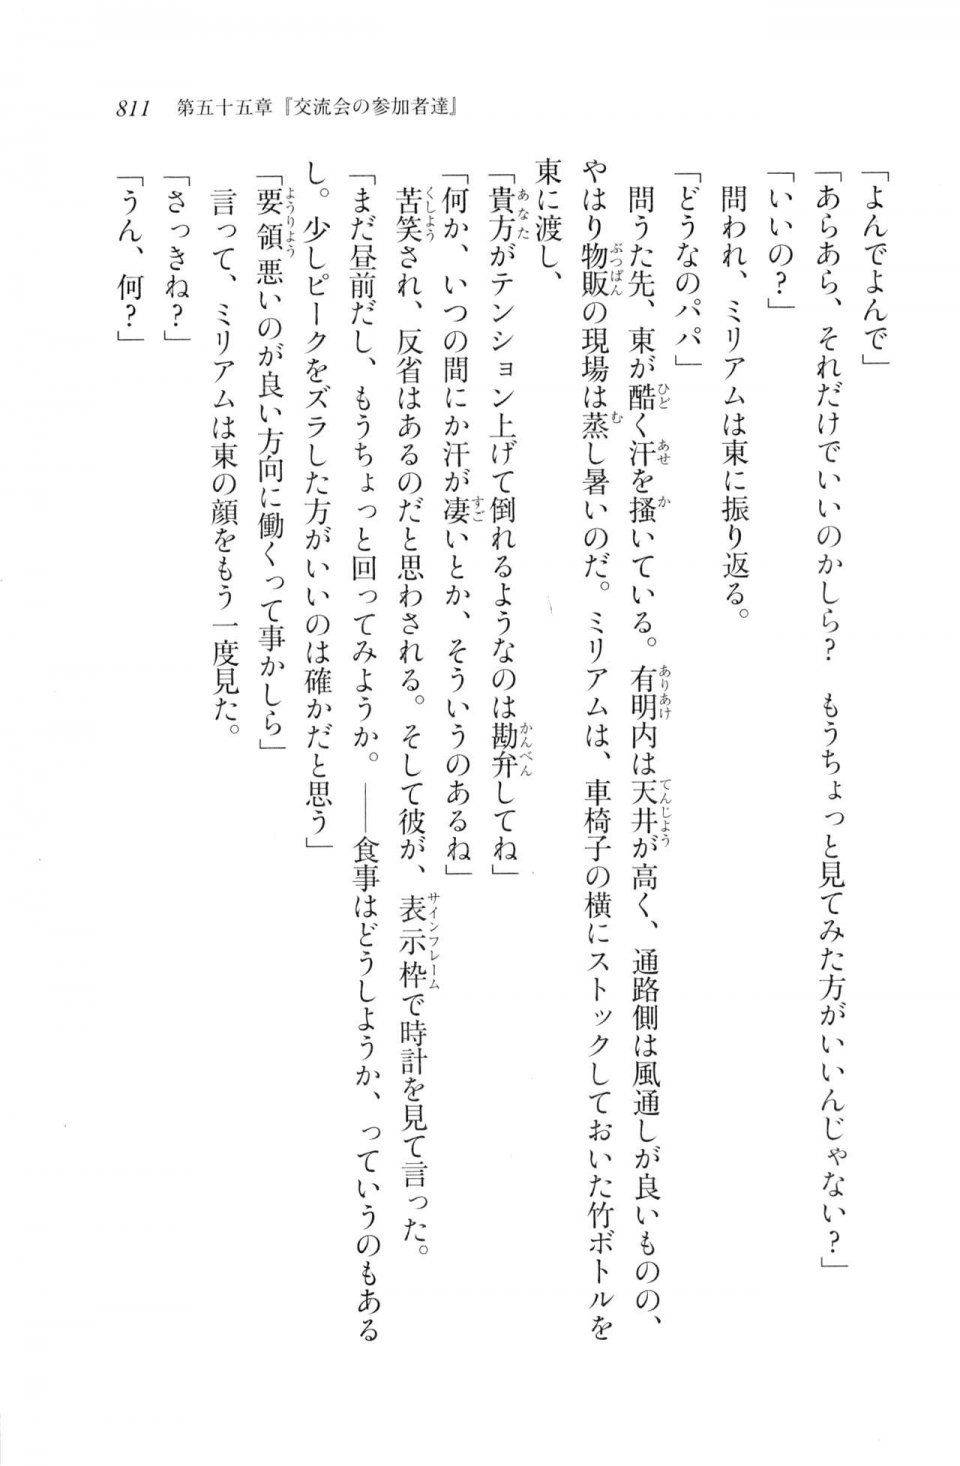 Kyoukai Senjou no Horizon LN Vol 20(8B) - Photo #811